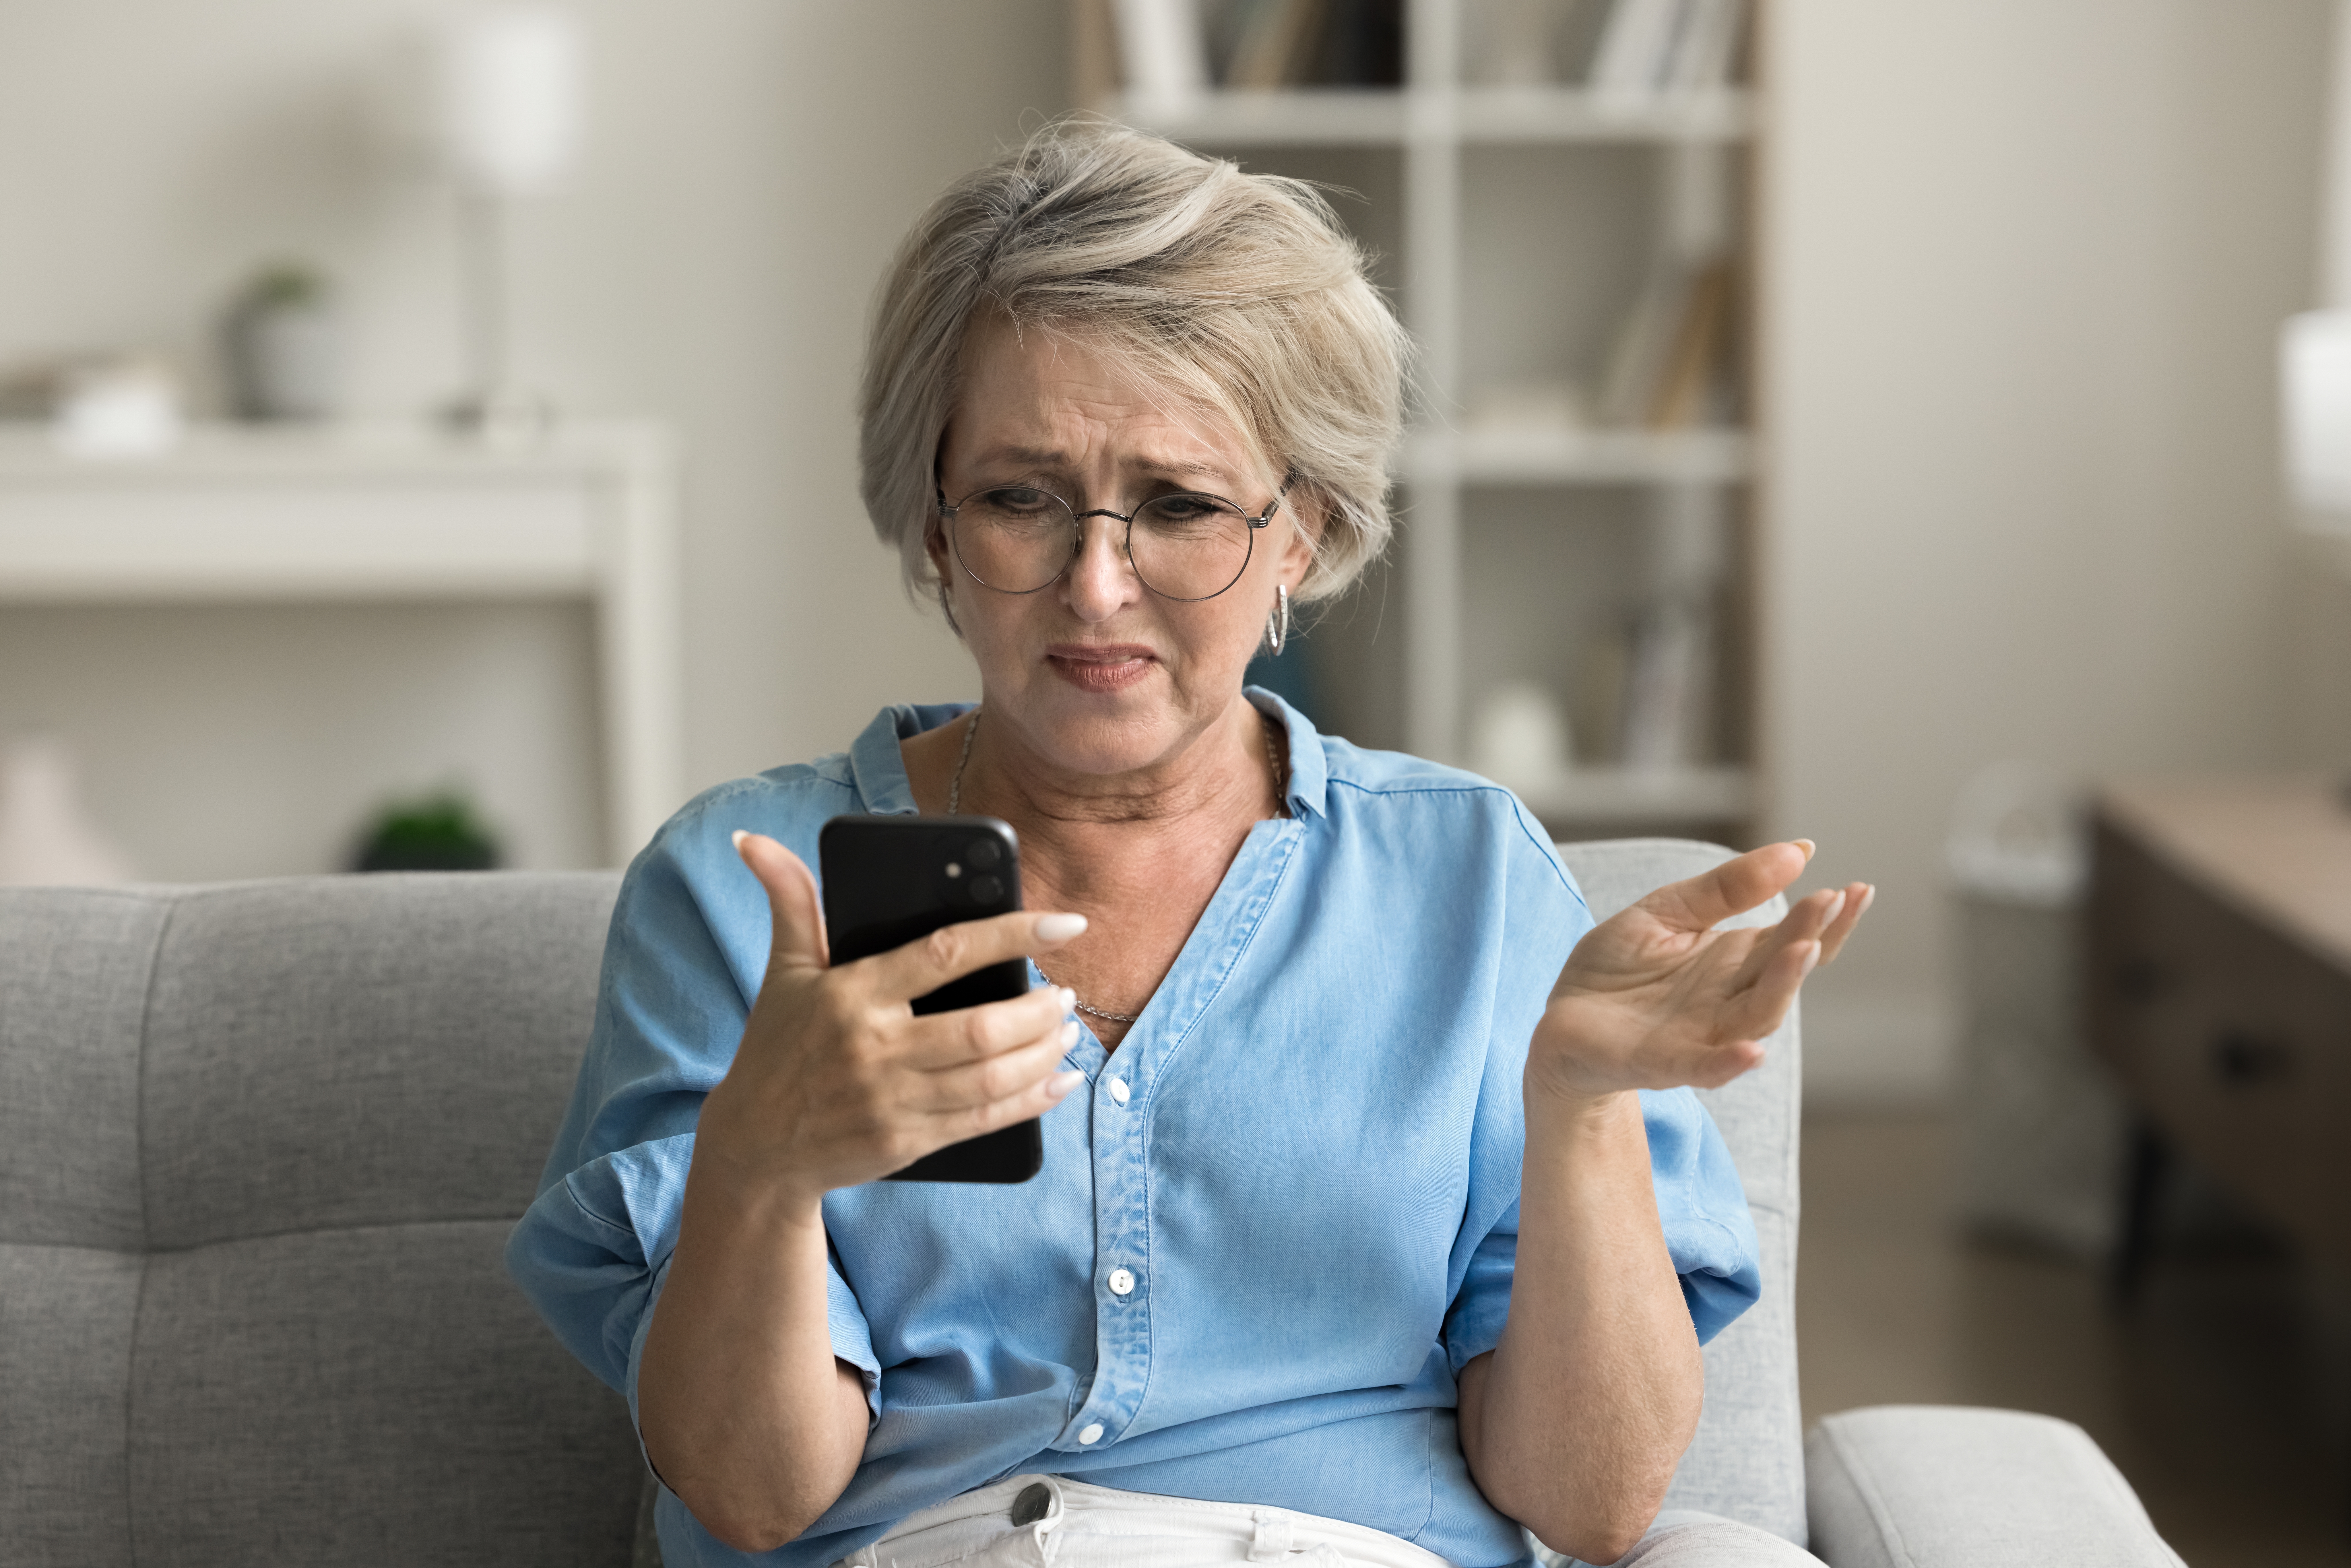 Femme âgée frustrée voyant quelque chose de contrariant sur son téléphone | Source : Shutterstock